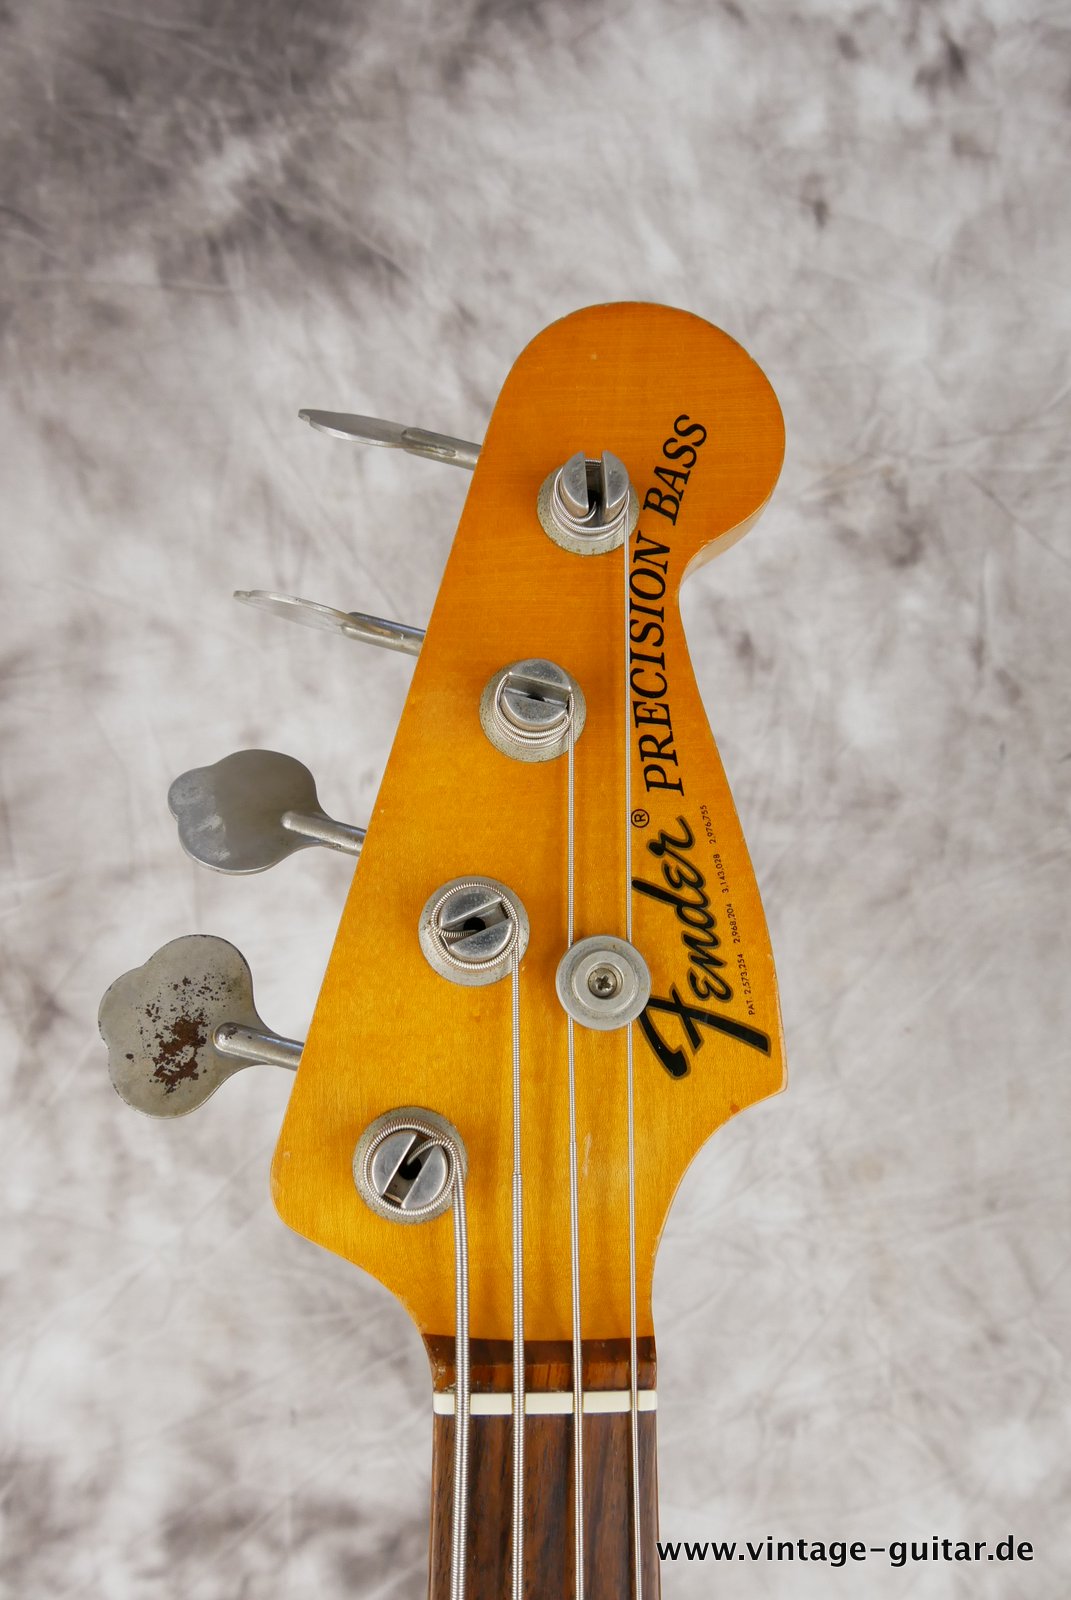 Fender-Precision-Bass-sunburst-1969-009.JPG